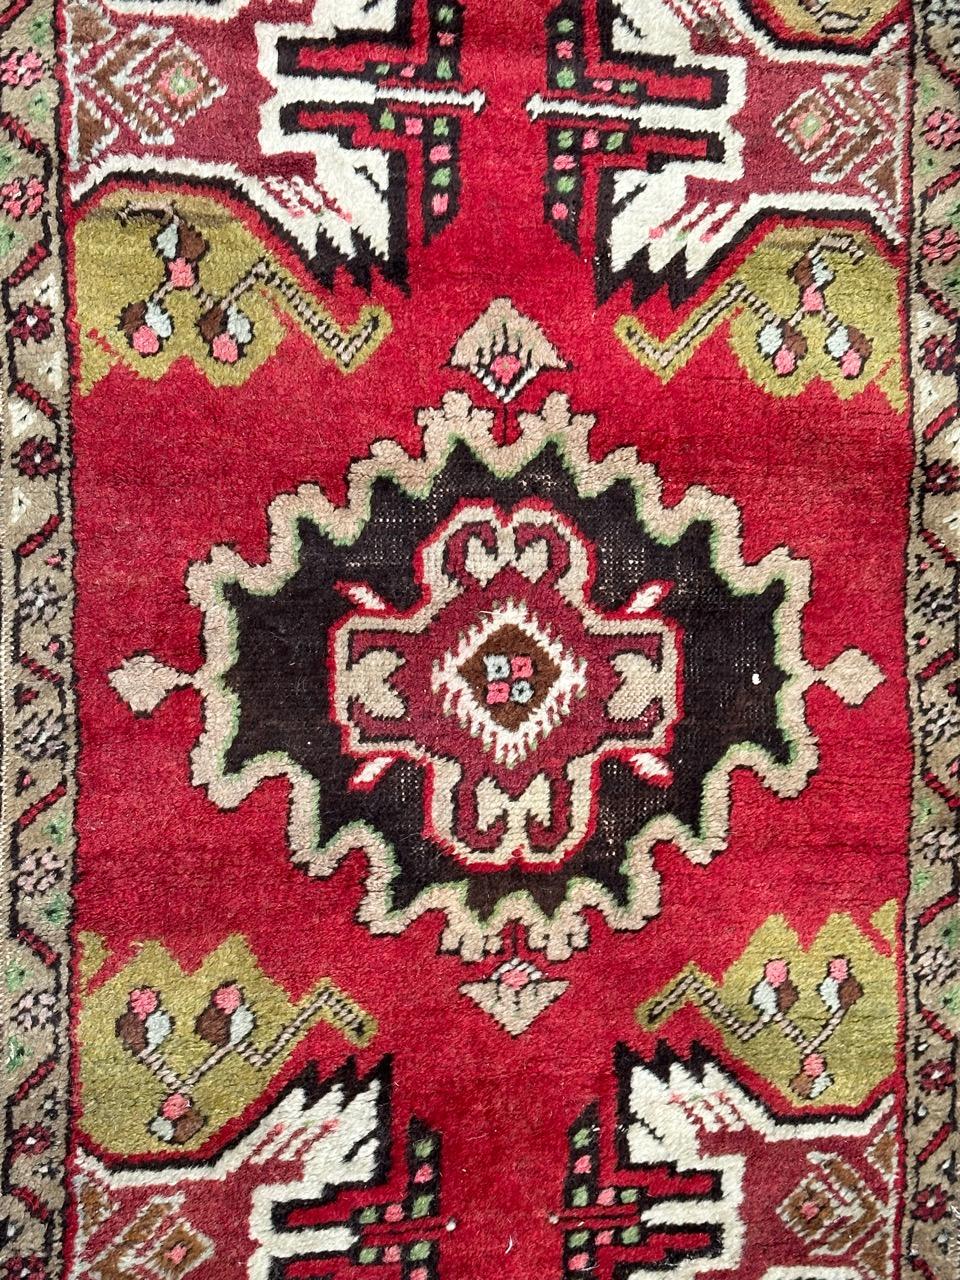 Schöner kleiner türkischer Teppich aus der Mitte des Jahrhunderts mit schönem geometrischen Muster und schönen Farben mit rot, grün, rosa, braun, ganz handgeknüpft mit Wolle auf Baumwollbasis 

✨✨✨
